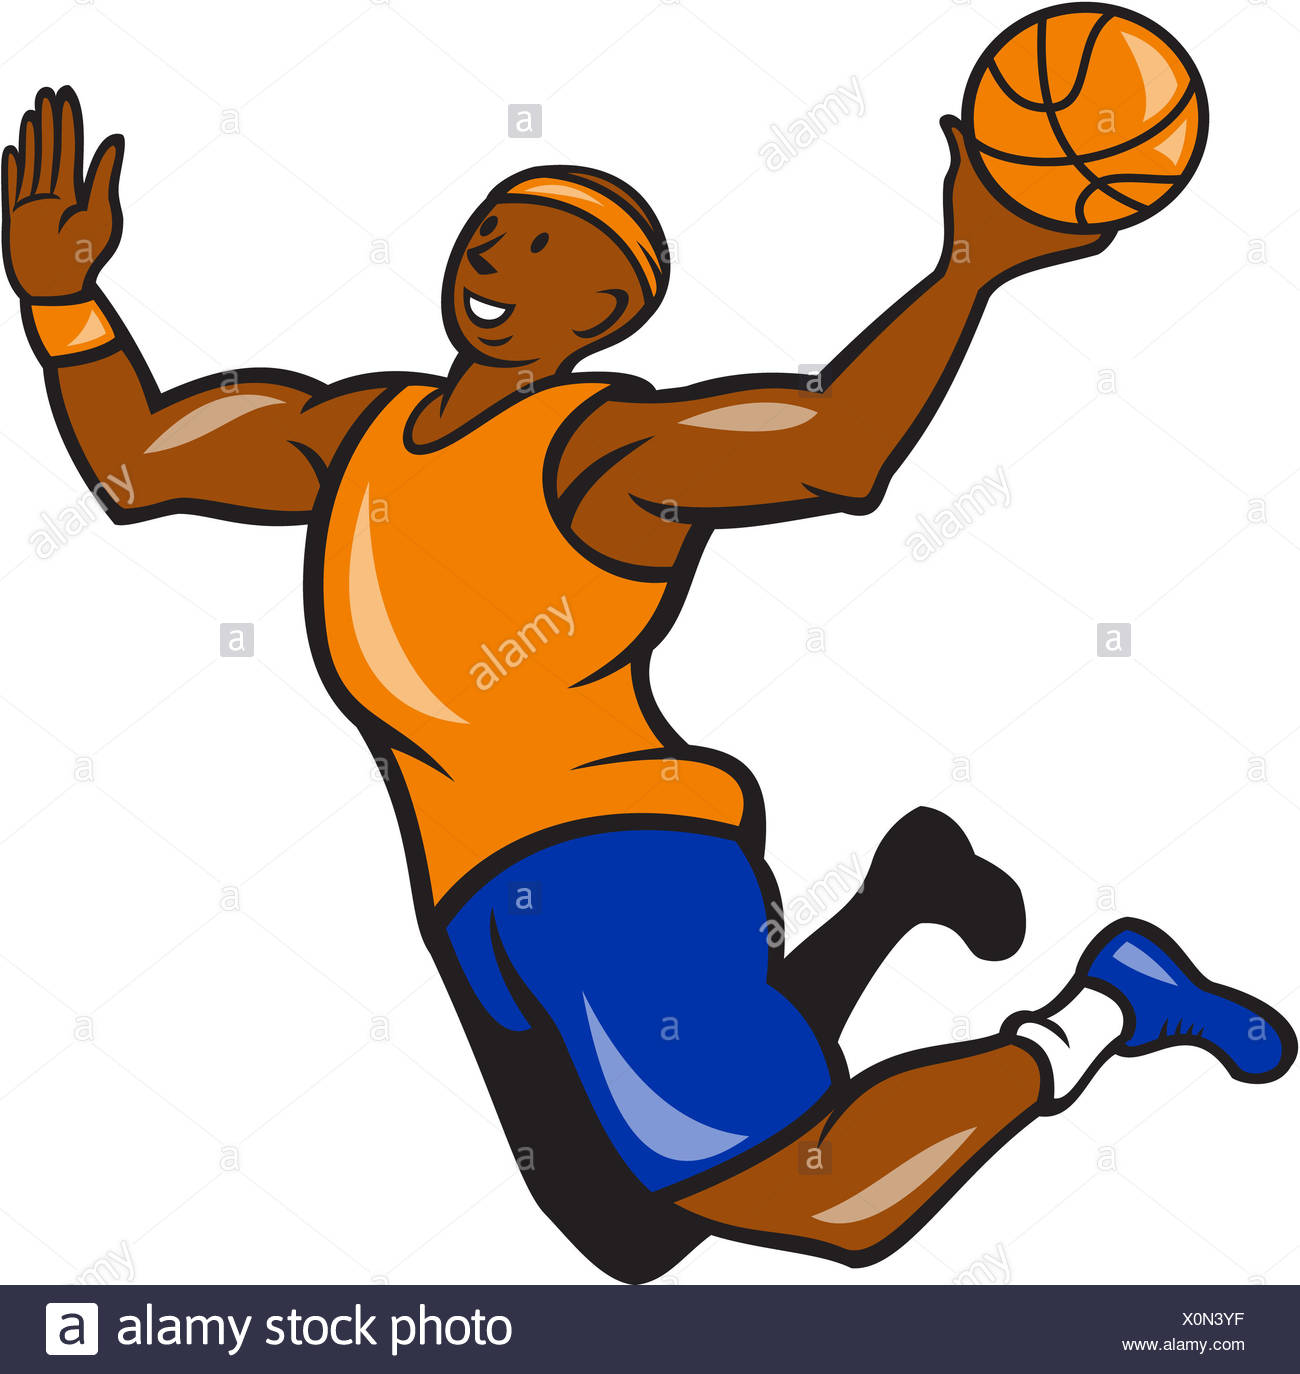 Vector Illustration Cartoon Basketball Player Stock Photos & Vector